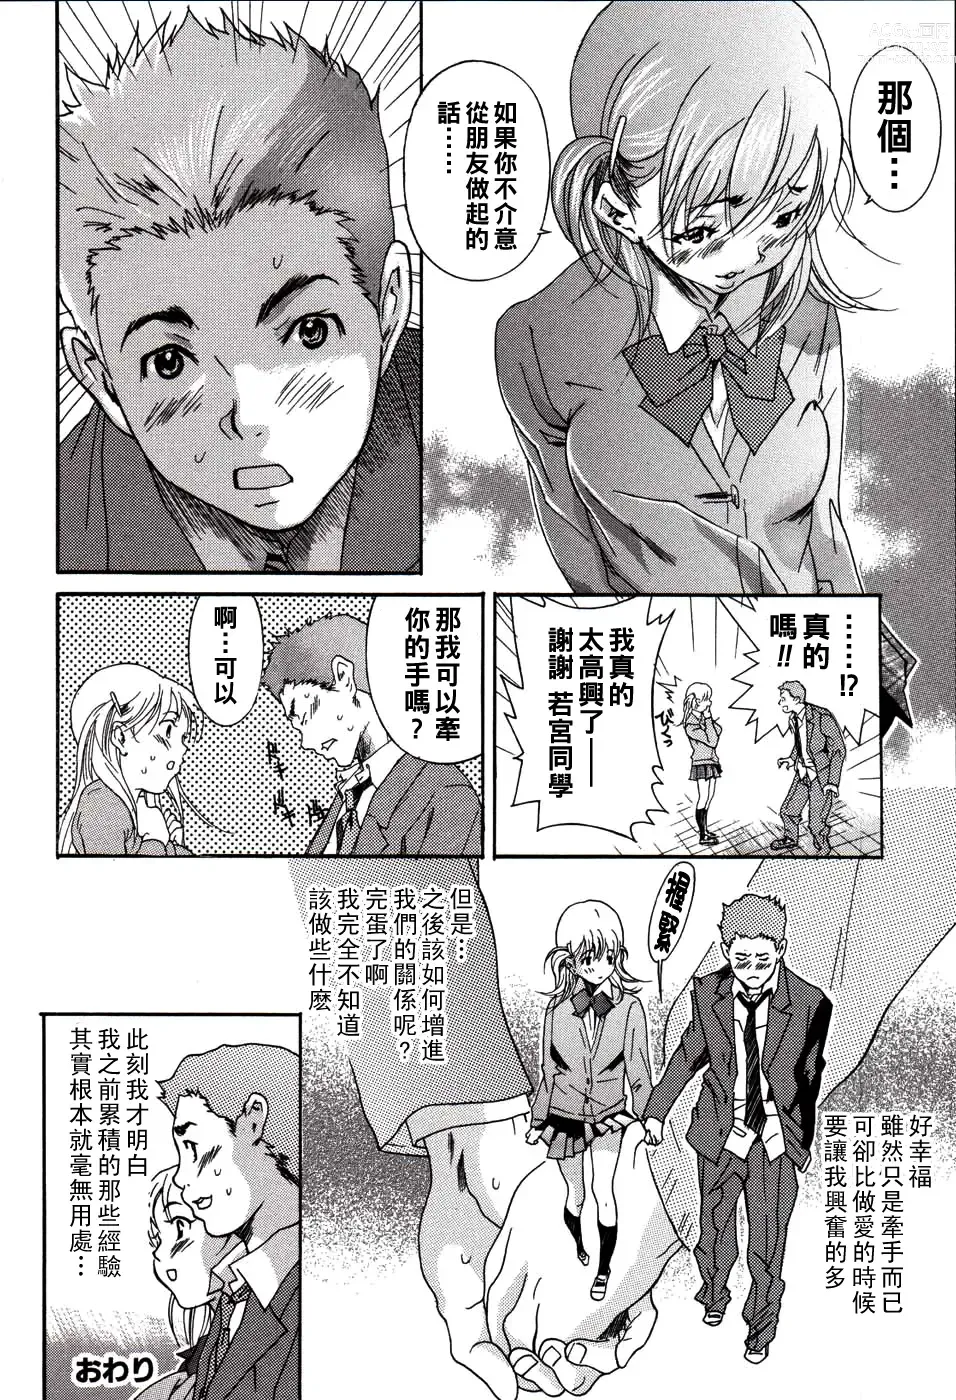 Page 20 of manga Kareshi no Jijou